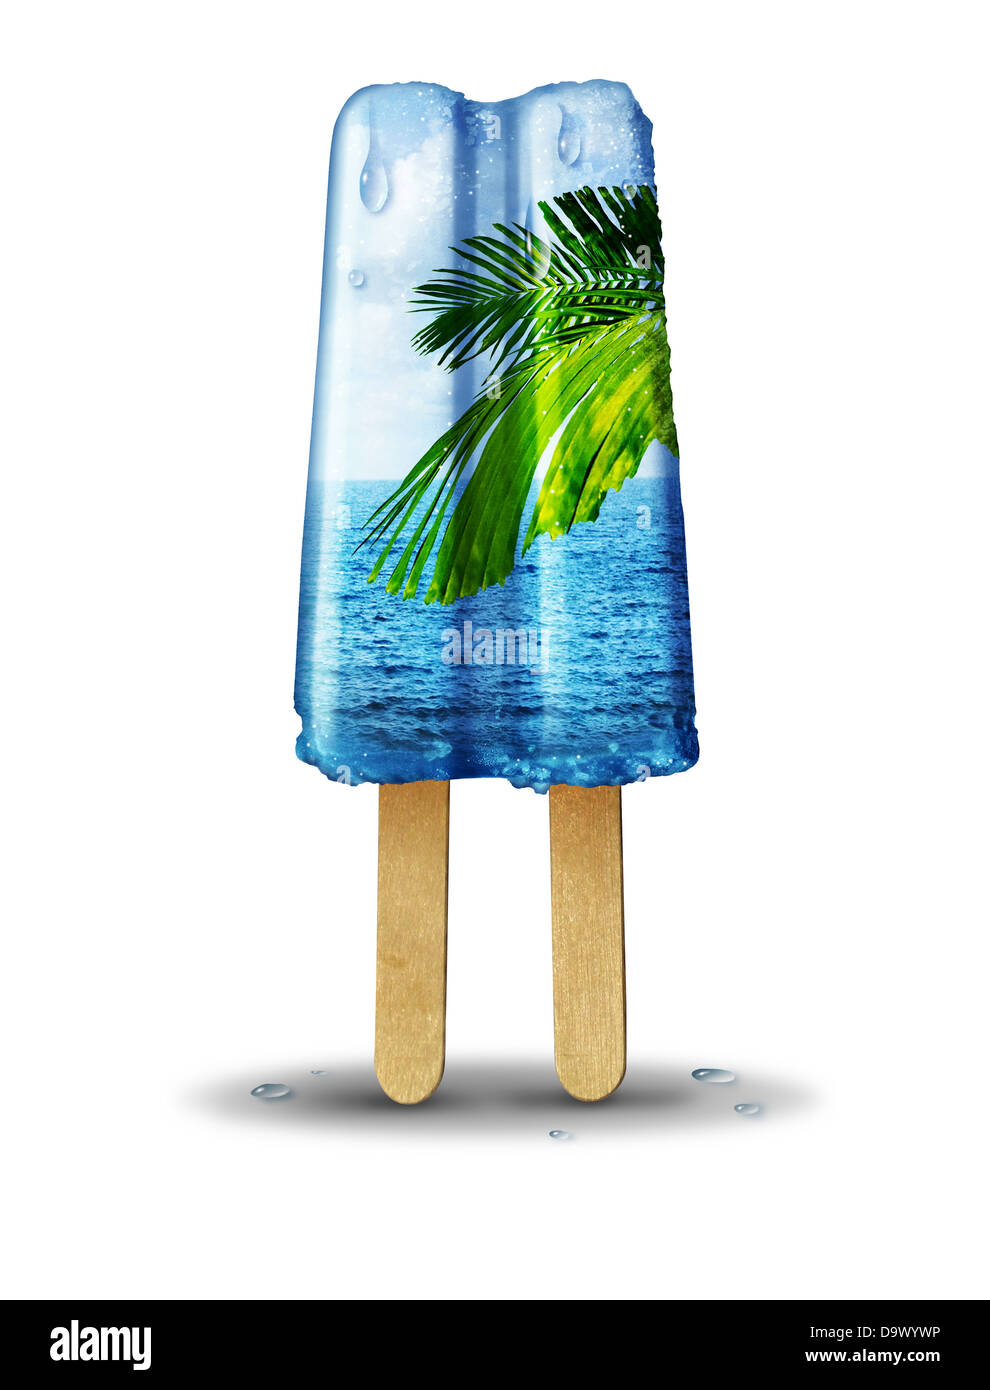 Coole Sommer-Konzept als eine aromatisierte Eis behandeln mit einer tropischen Sommer-Szene des Ozeans und Palme in der Kälte, erfrischende Dessert auf einem weißen Hintergrund. Stockfoto